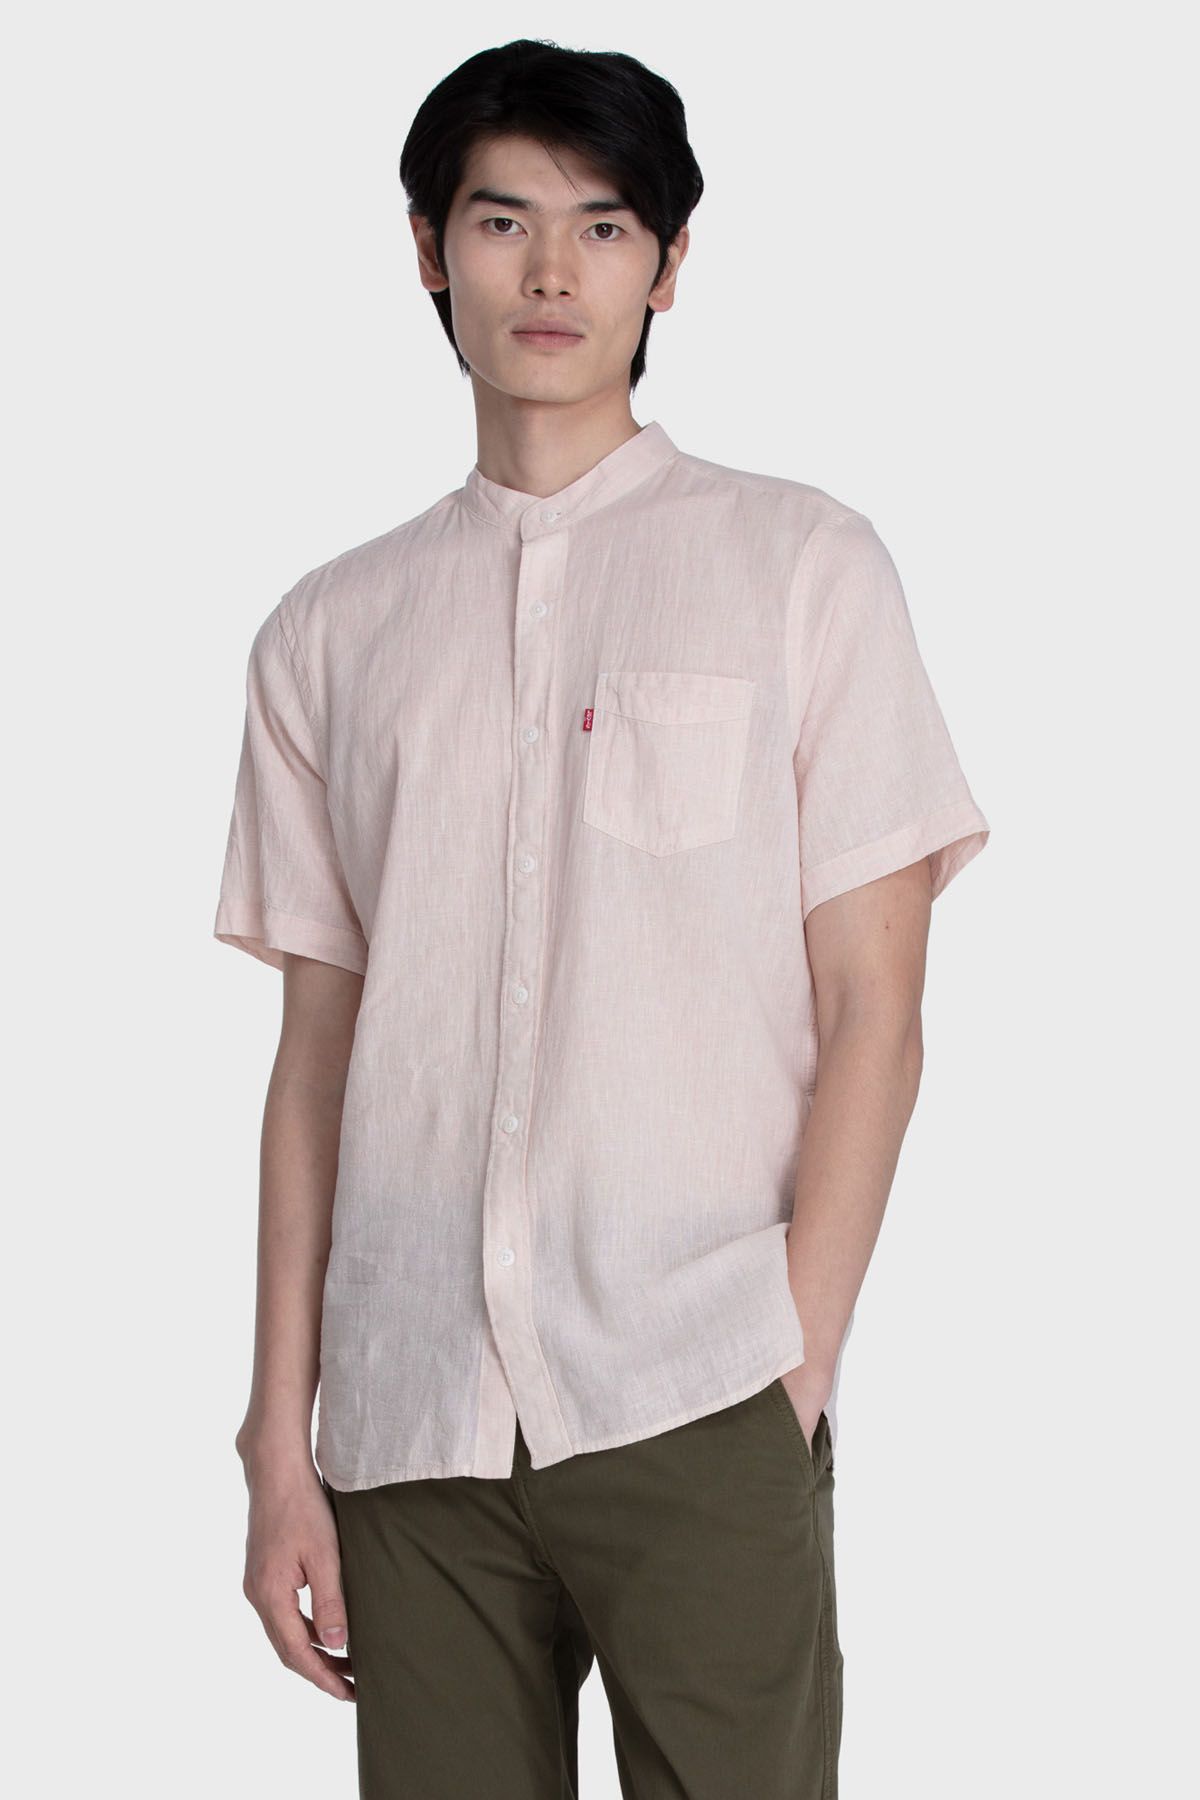 Levi's Â® S/S Mandarin Collar Shirt Pink Men Shirts|